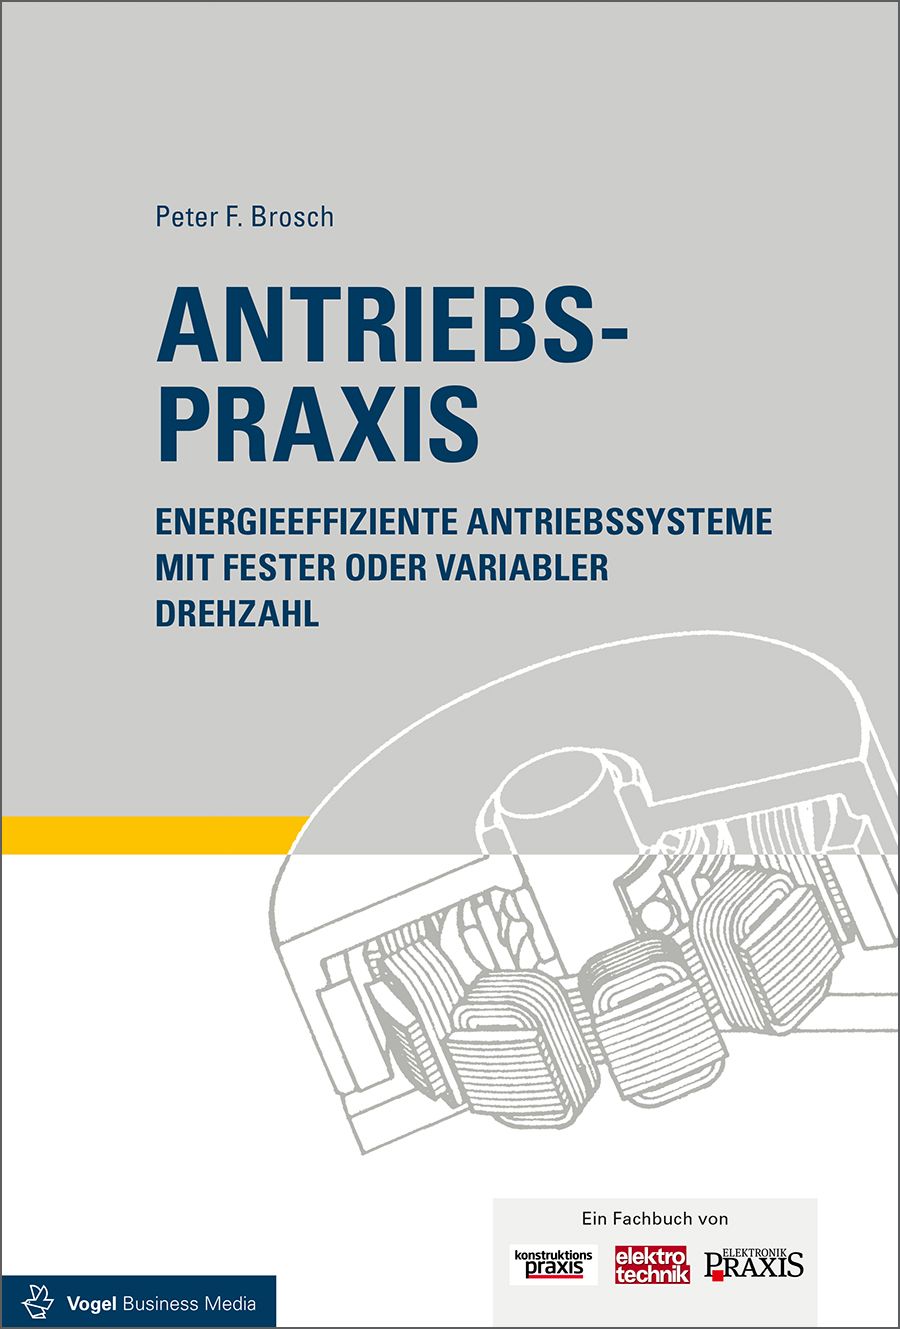 Das Fachbuch "Antriebspraxis. Energieeffiziente Antriebssysteme mit fester oder vvariabler Drehzahl" von Peter F. Brosch